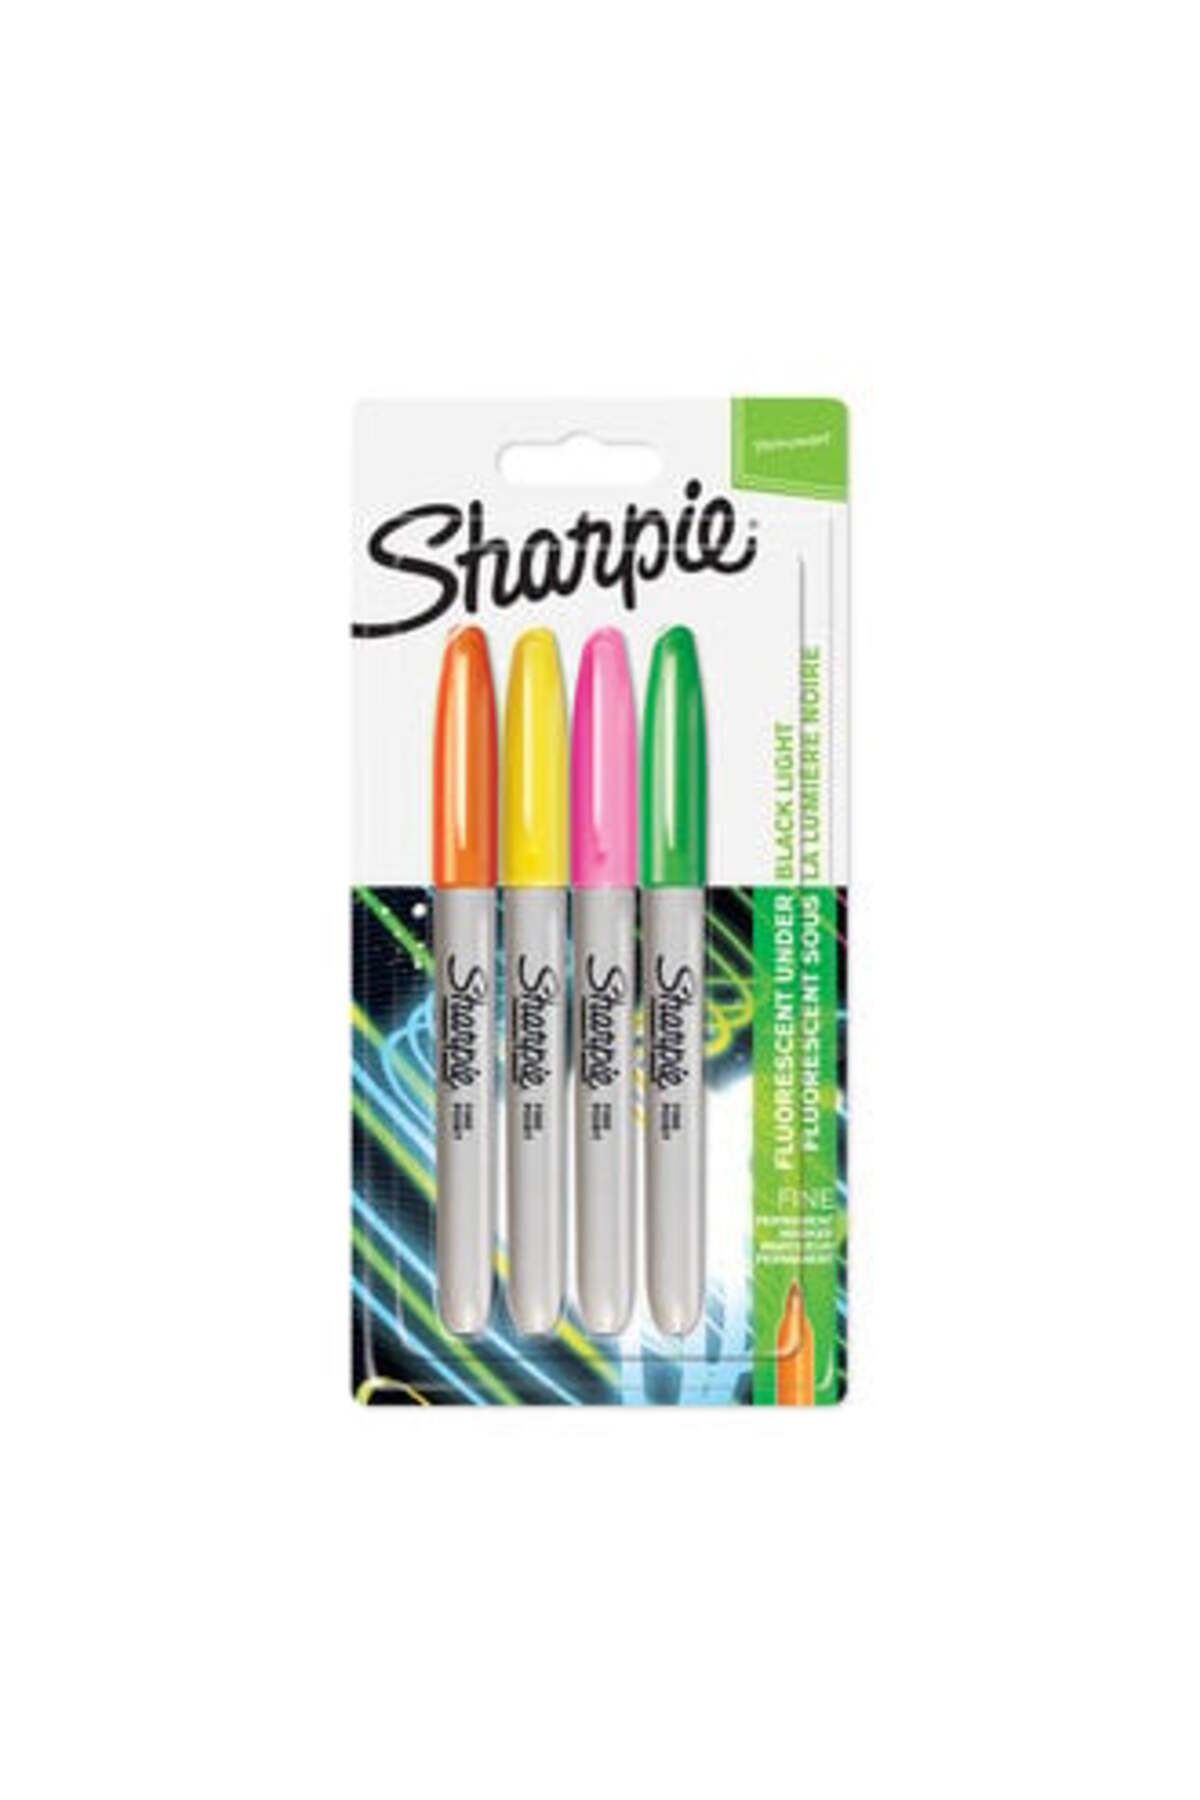 Sharpie Neon Permanent Keçeli Kalem, 4'lü Fosforlu Renkte Boya Kalemi Seti ( 1 ADET )